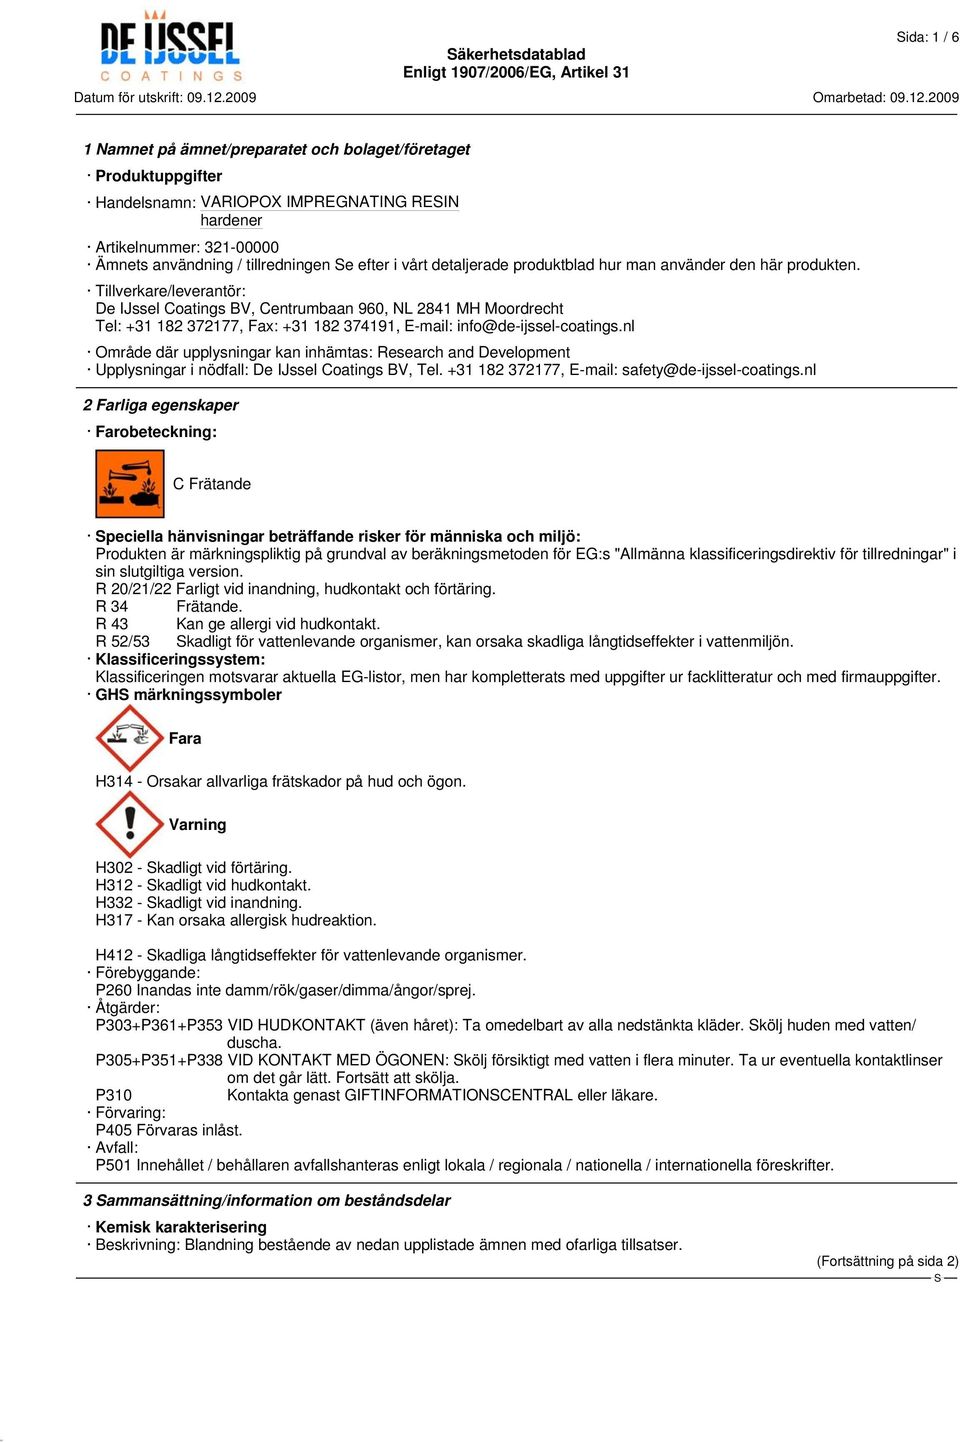 Tillverkare/leverantör: De IJssel Coatings BV, Centrumbaan 960, NL 2841 MH Moordrecht Tel: +31 182 372177, Fax: +31 182 374191, E-mail: info@de-ijssel-coatings.